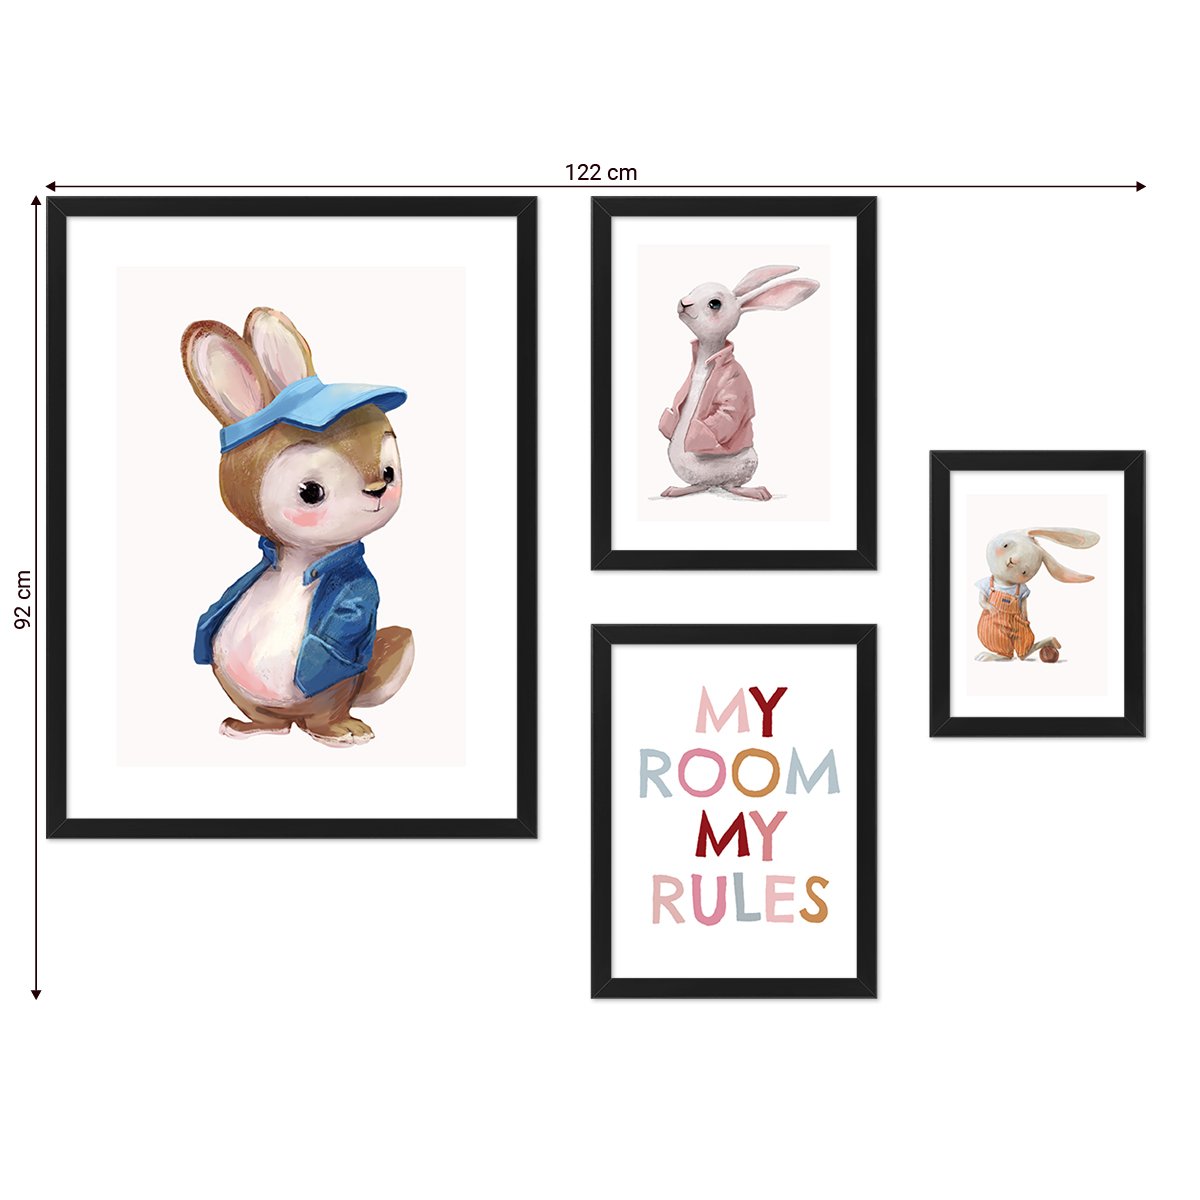 Galeria ścienna do pokoju dziecięcego - obrazy z królikami i angielskim napisem#ramka_czarna